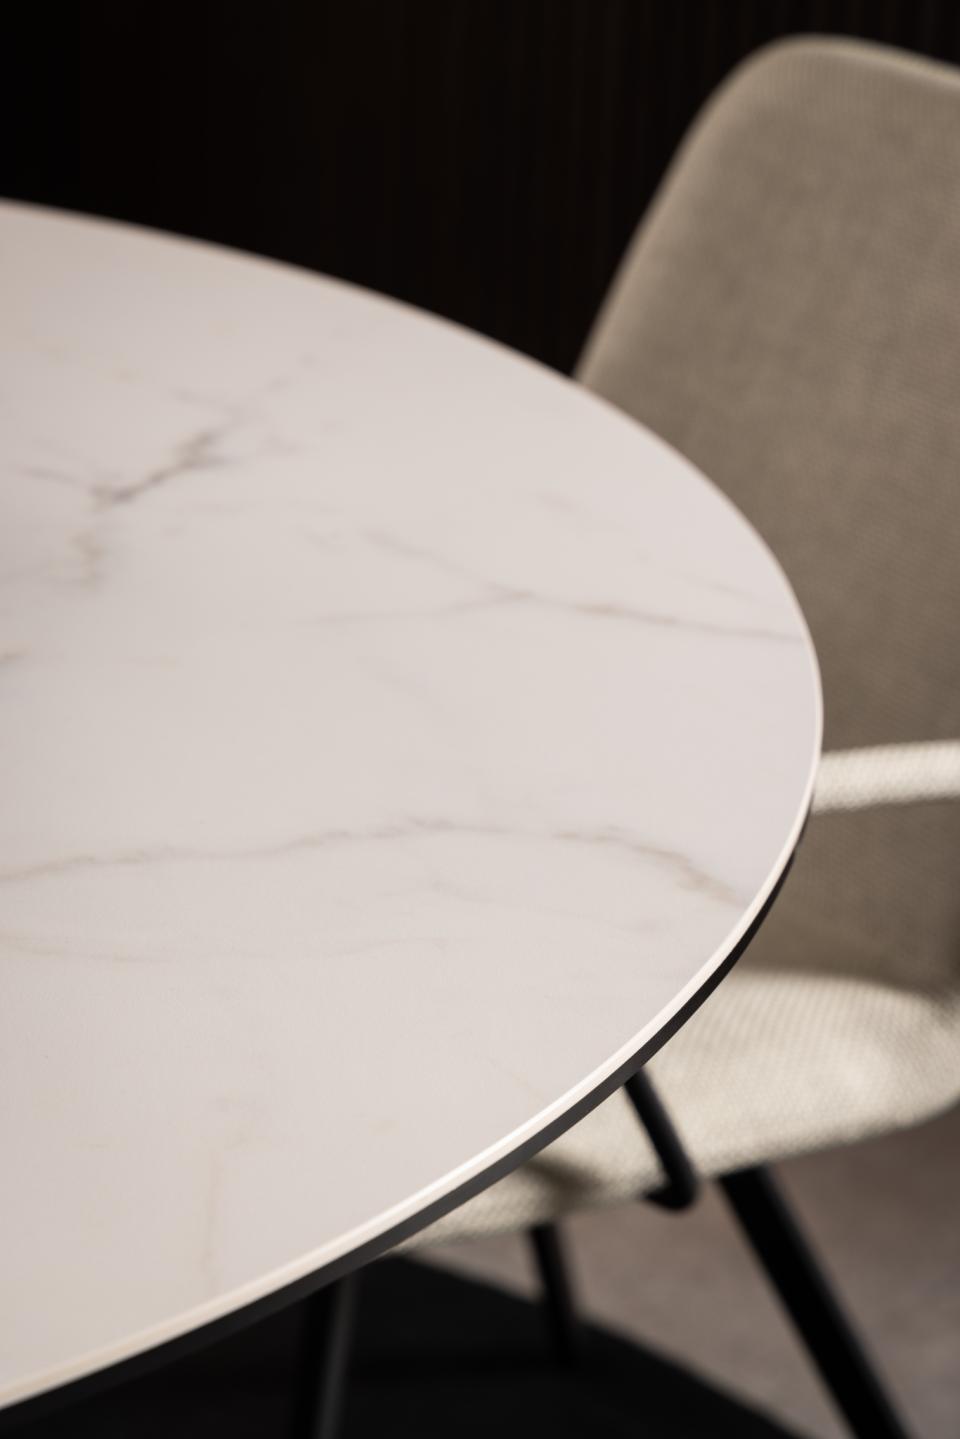 HEVE apaļš pusdienu galds,balta Akranes neapstrādāta keramika Ø119x75,5 cm